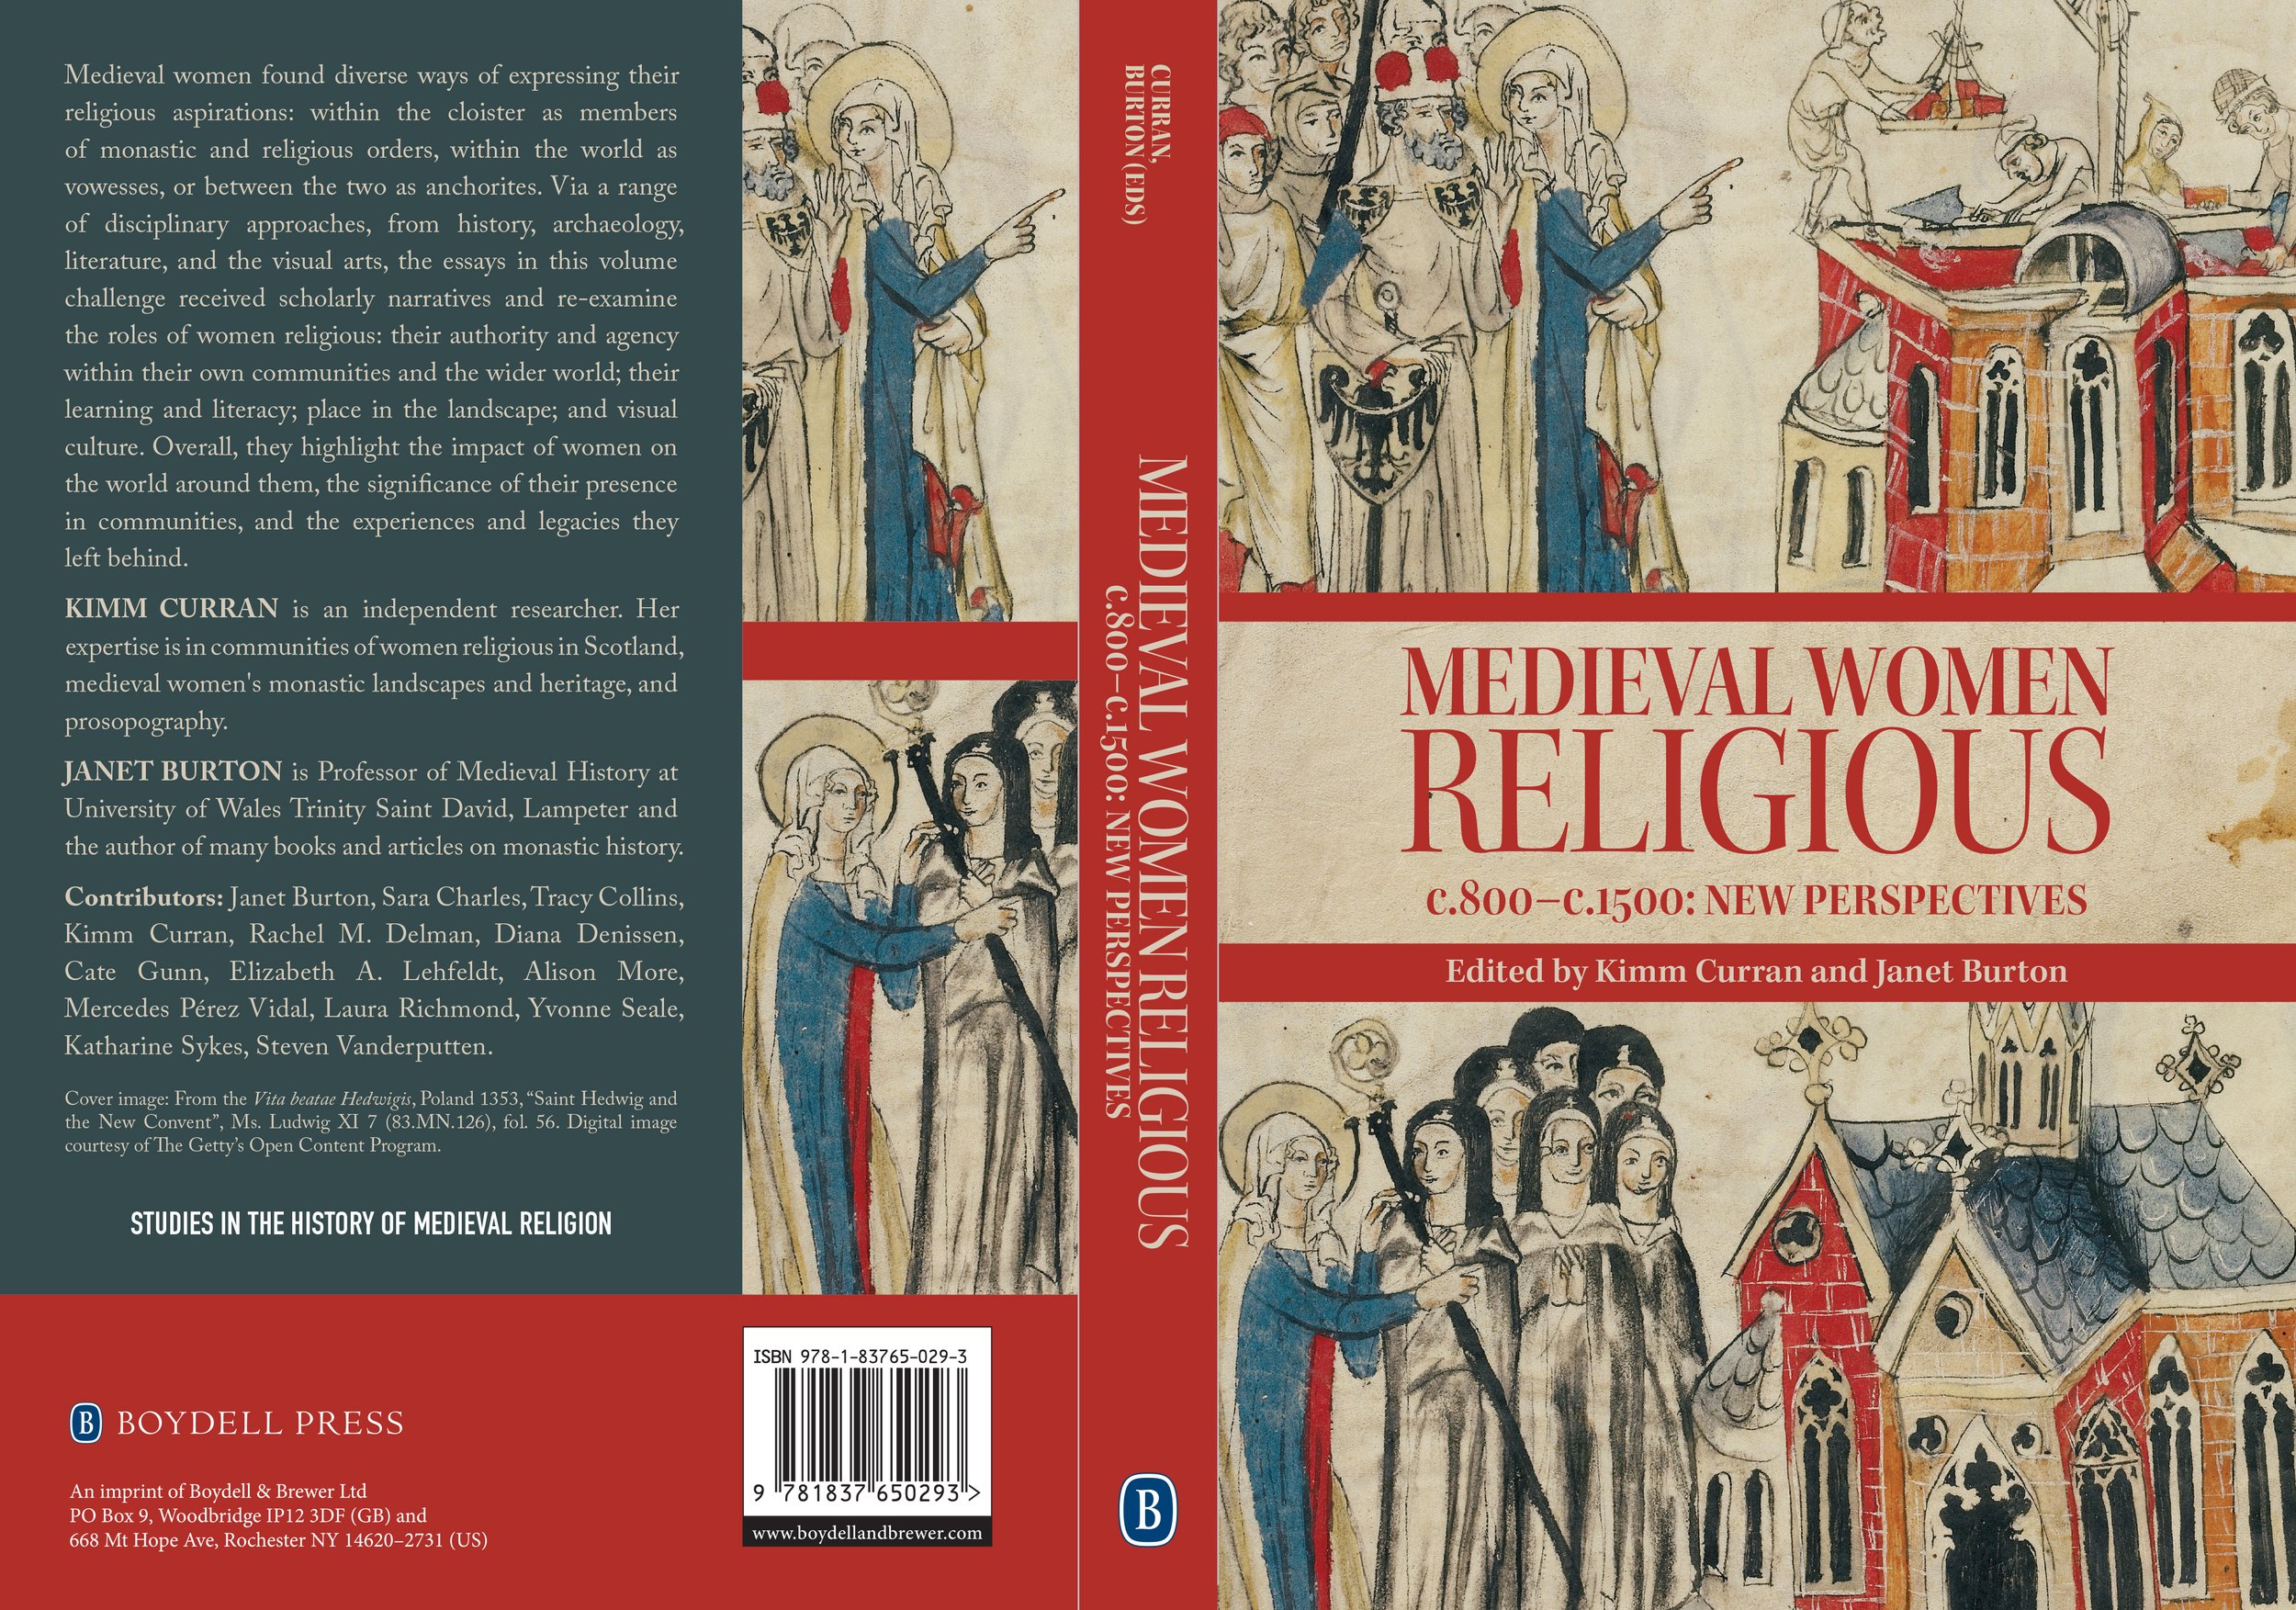 Medieval Women Religious